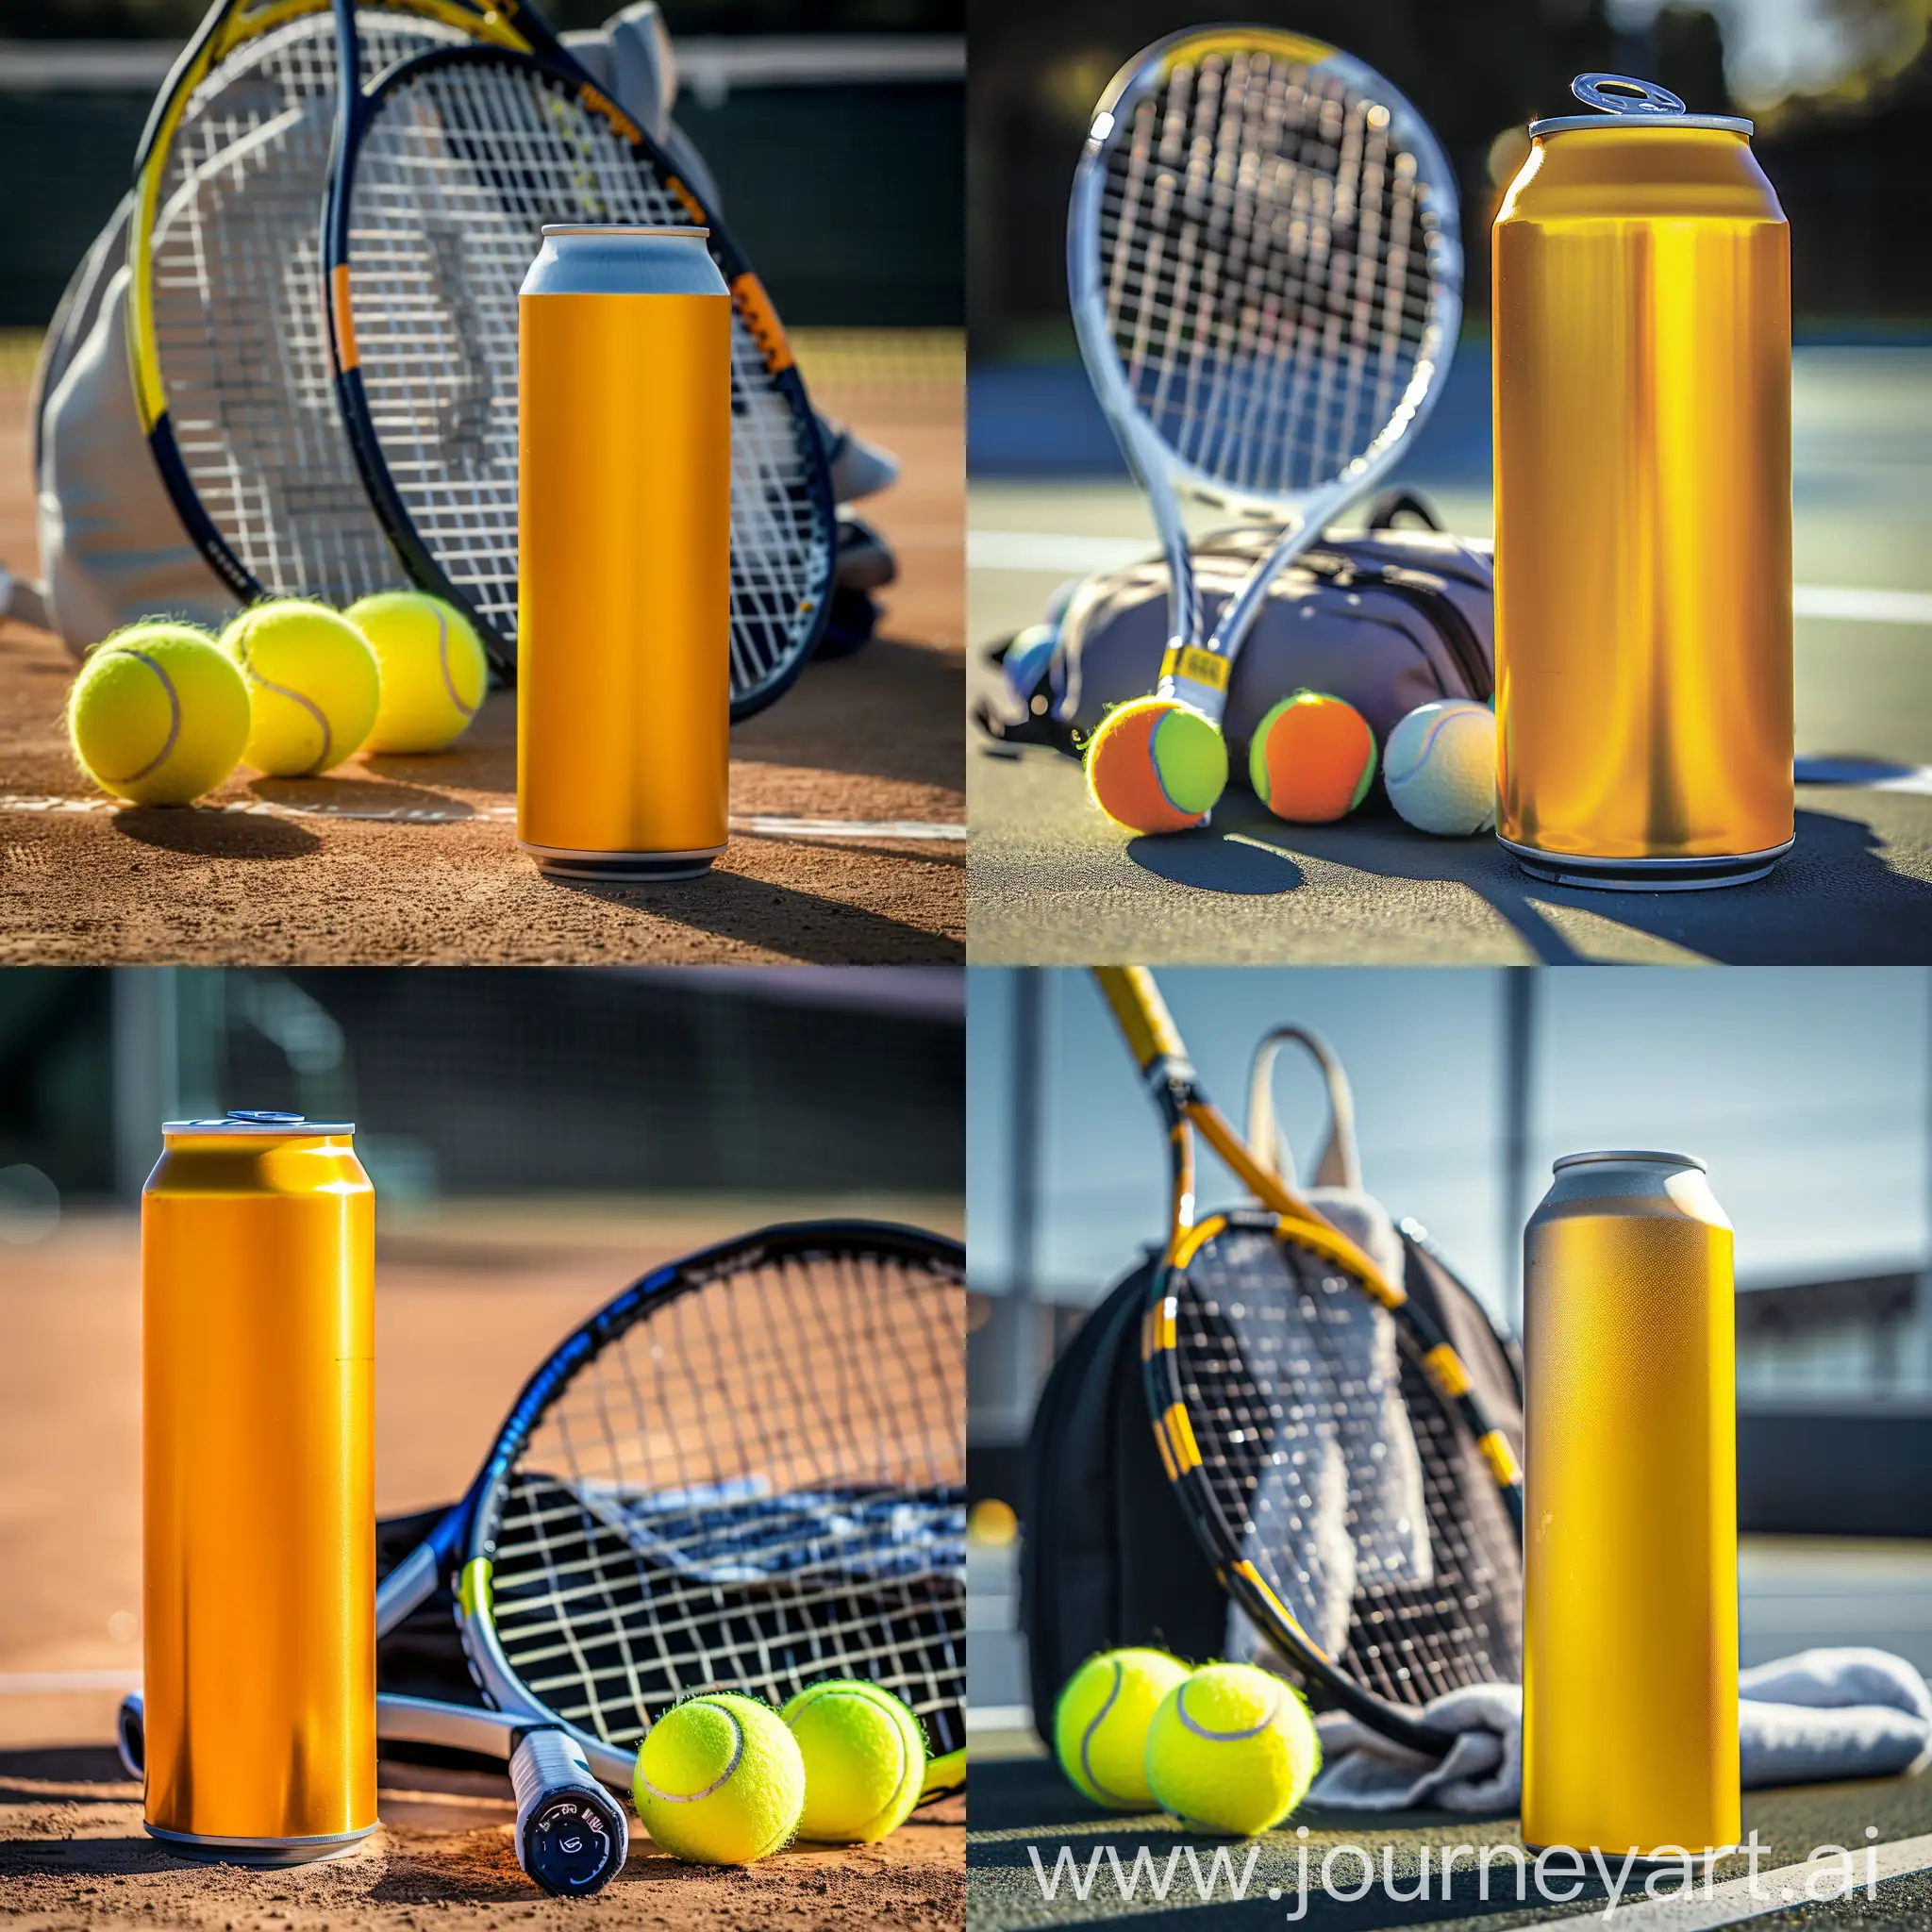 Sur le court de tennis, une canette jaune vive d'une boisson énergisante se tient au premier plan, au côté d'un équipement de tennis composé d'une raquette, de balles et d'un sac. La canette s'impose avec sa couleur lumineuse, sa surface lisse et son design qui suggère la vitalité et l'énergie brute. La lumière du jour joue sur la surface métallique de la canette, soulignant sa fraîcheur rafraîchissante.
La raquette de tennis, avec son réseau serré et sa poignée solide, suggère l'intensité et la précision du sport. Les balles de tennis alignées, prêtes à être utilisées, symbolisent la dynamique du jeu. Le sac de sport, ouvert, révèle une serviette de sport et une bouteille d'eau, soulignant l'importance de l'hydratation et du réconfort pendant les matches. Cette vue rapprochée reflète l'énergie et l'excitation propres à la pratique du tennis, tout en mettant en évidence l'importance d'une boisson énergisante pour le dynamisme des sportifs.